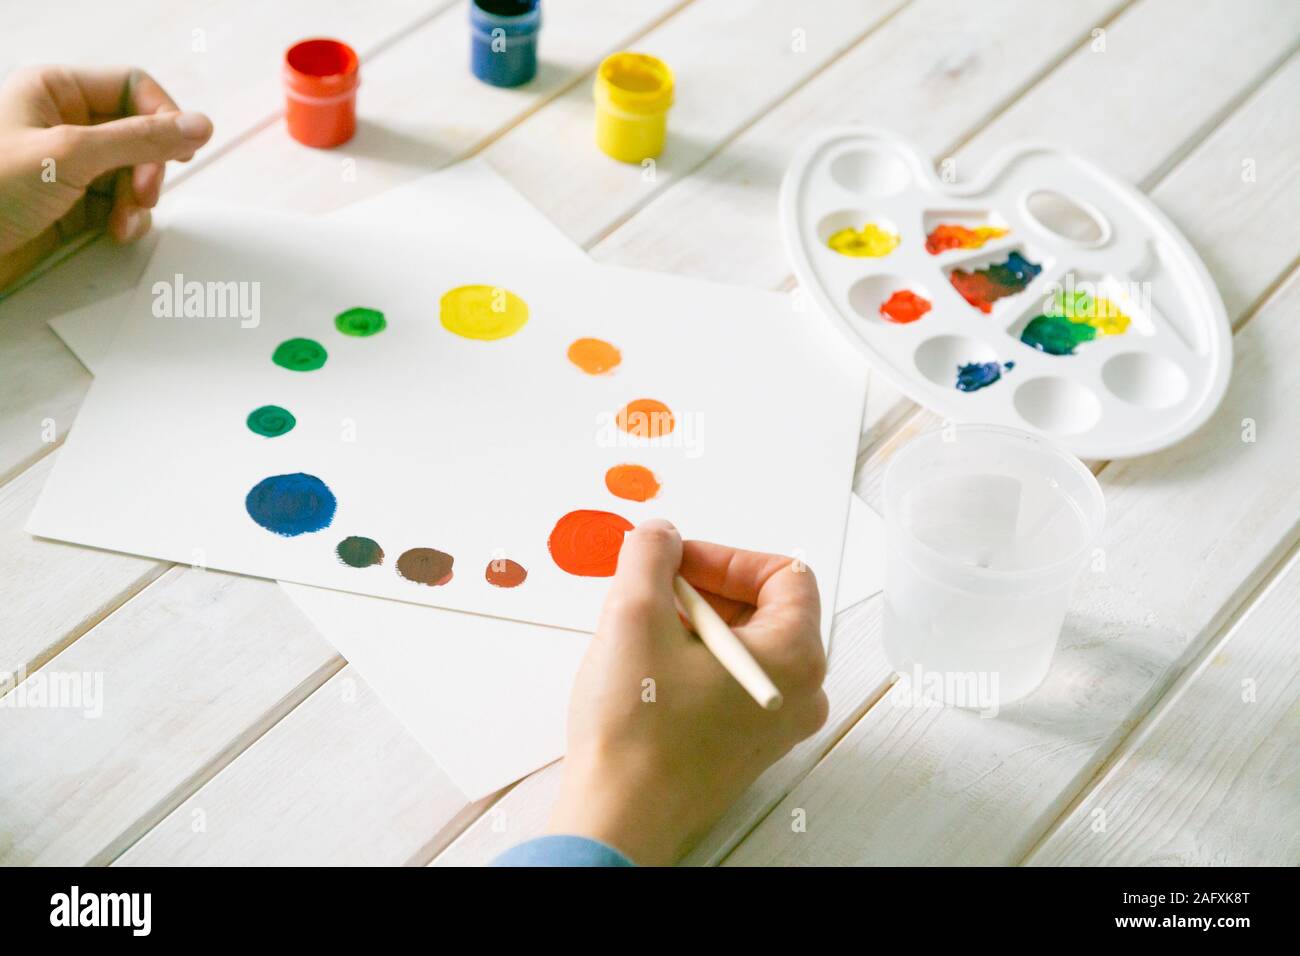 Art concept - colour wheel, gouache paints, brush and palette Stock Photo